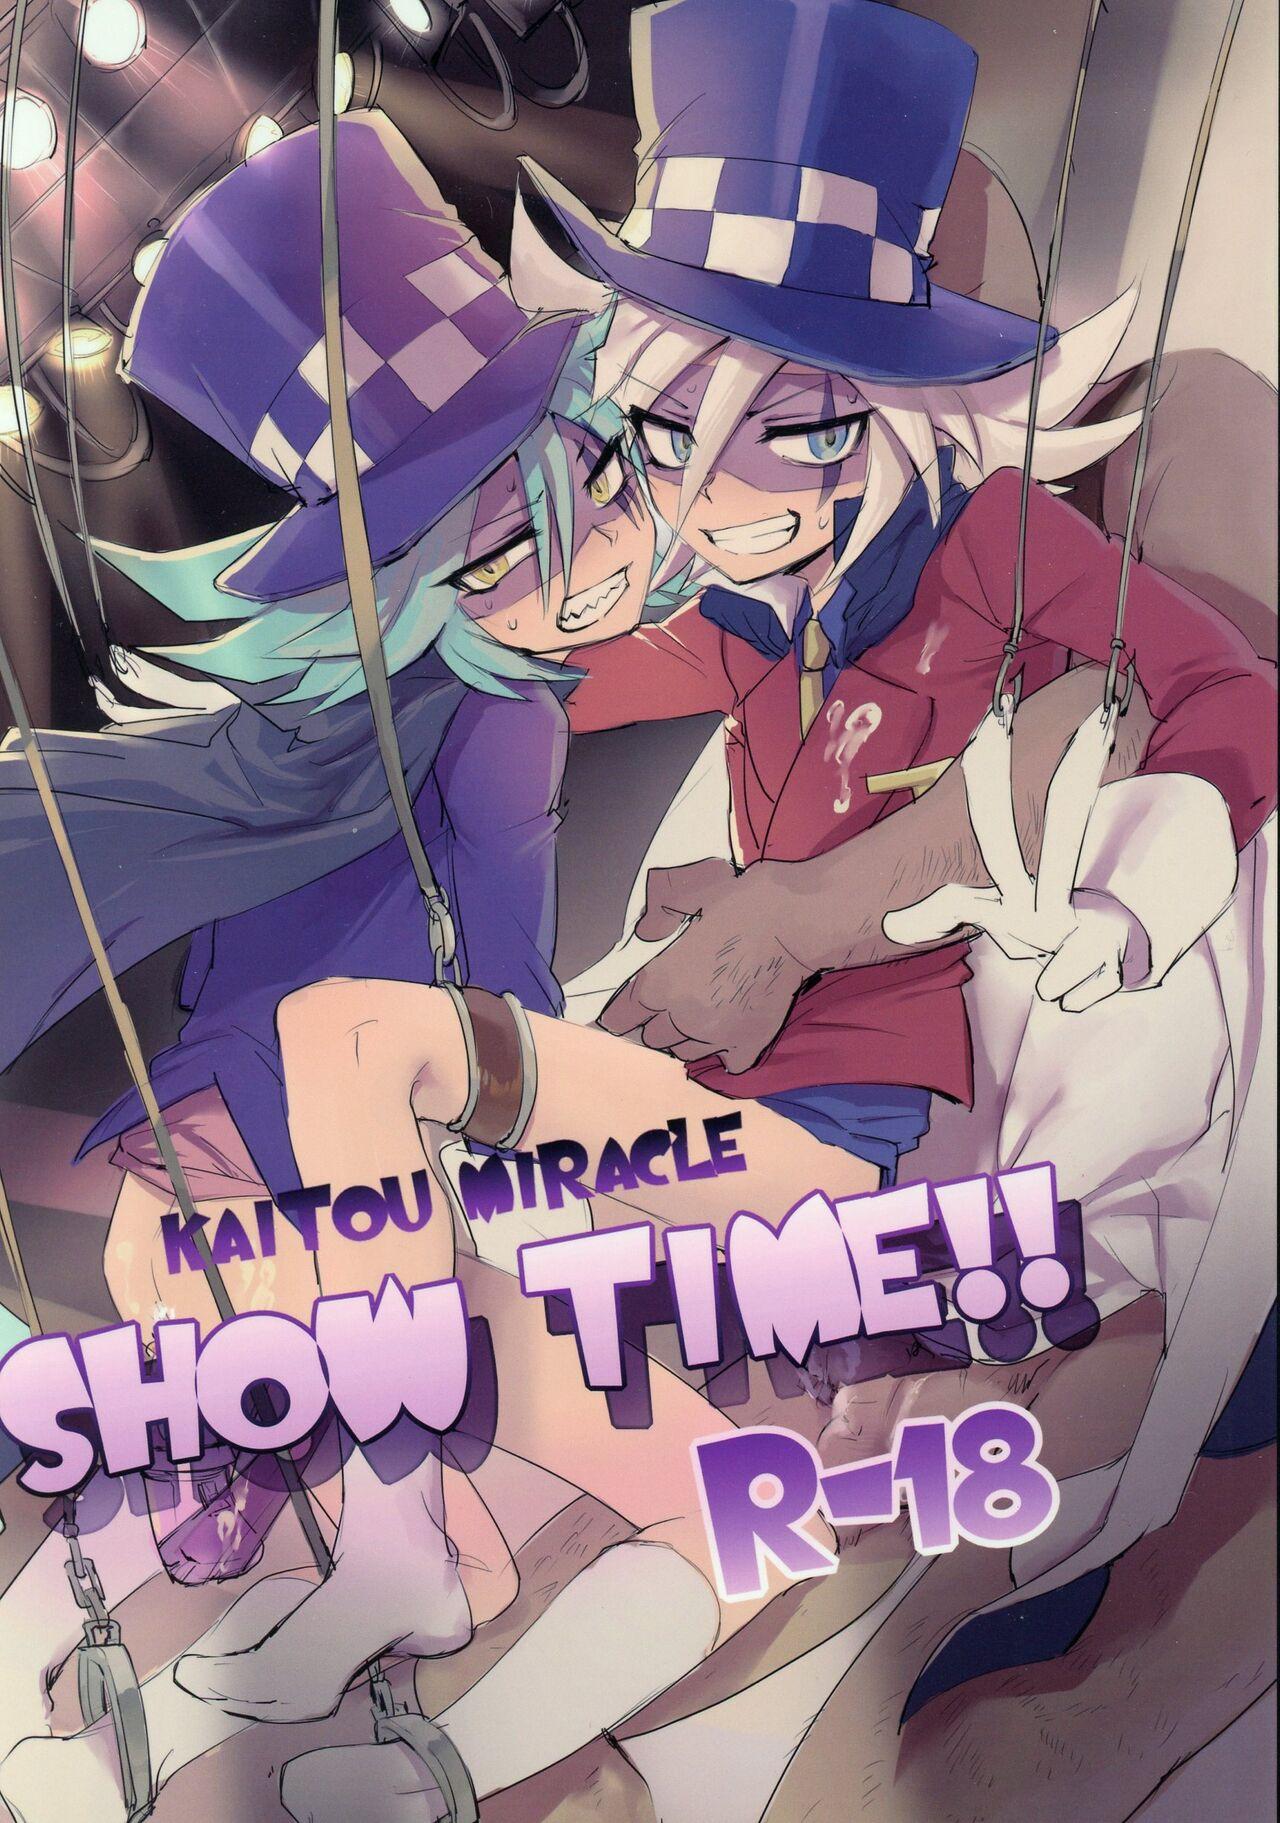 Smooth Kaitou Miracle Showtime!! - Kaitou joker Para - Picture 1